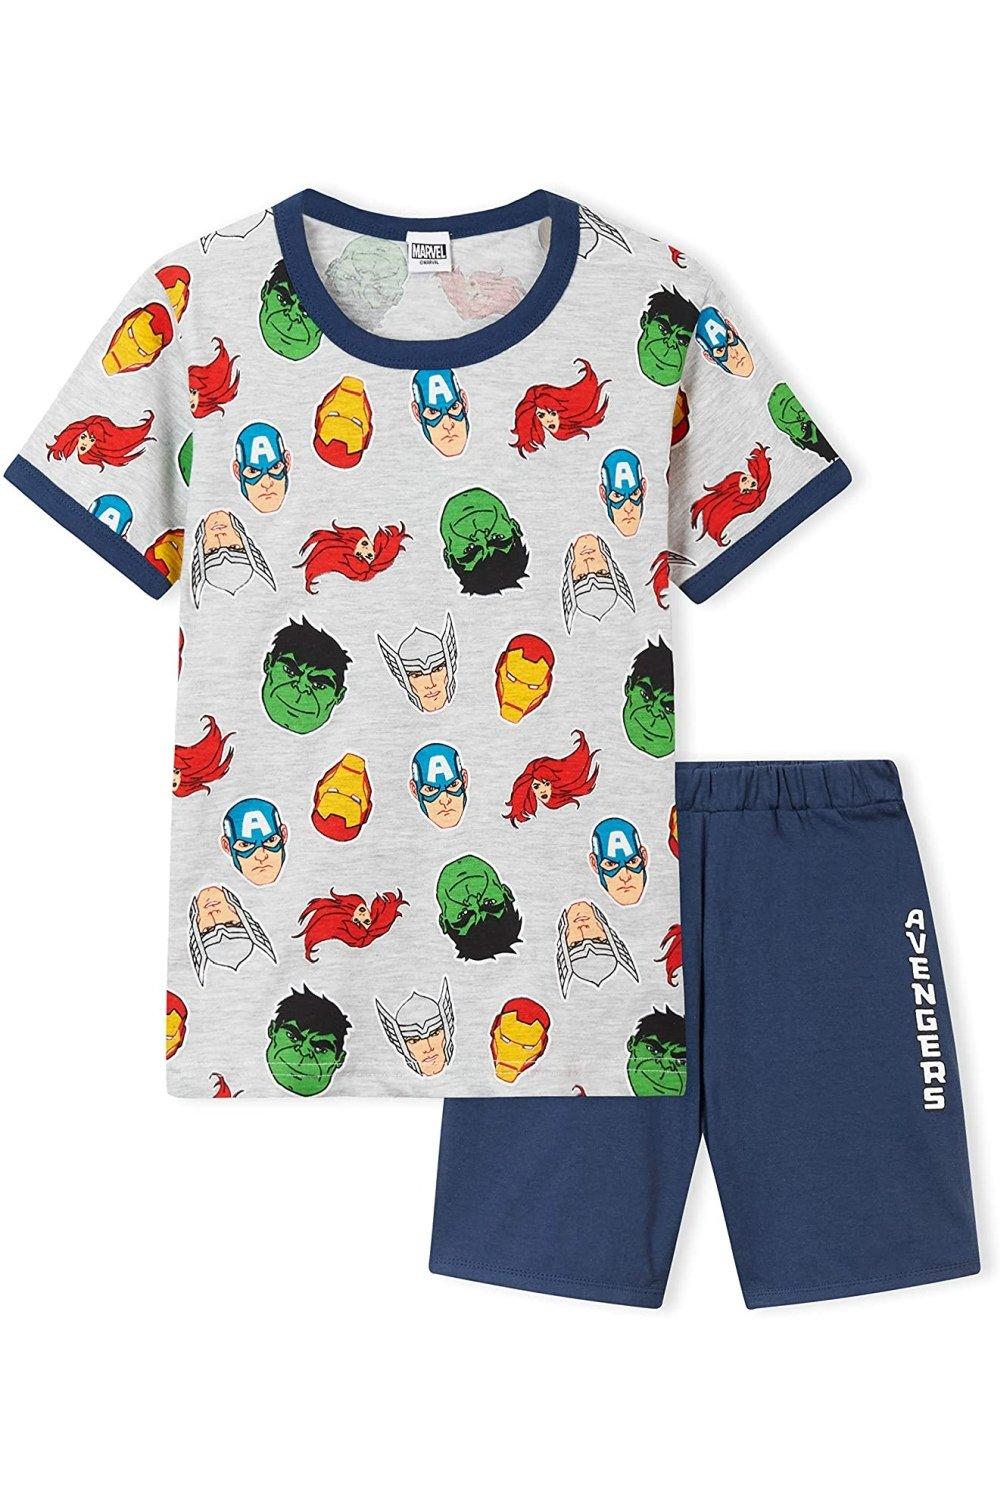 Короткий пижамный комплект Avengers Marvel, мультиколор комплект из двух предметов весна лето женские пижамы атласные пижамные комплекты одежда для сна с коротким рукавом топ пижамный комплек